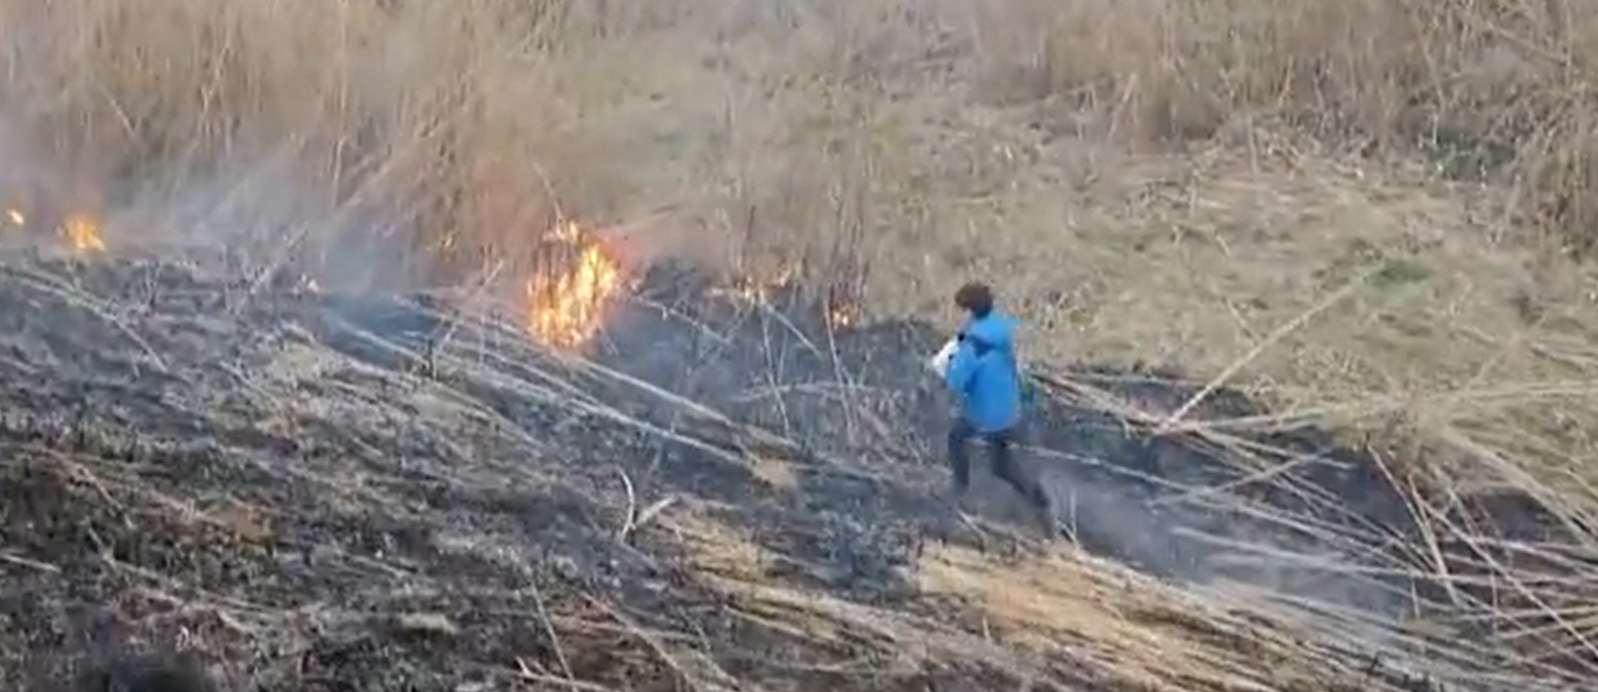 12-годишно момче от Бургас спря разразил се пожар край езеро